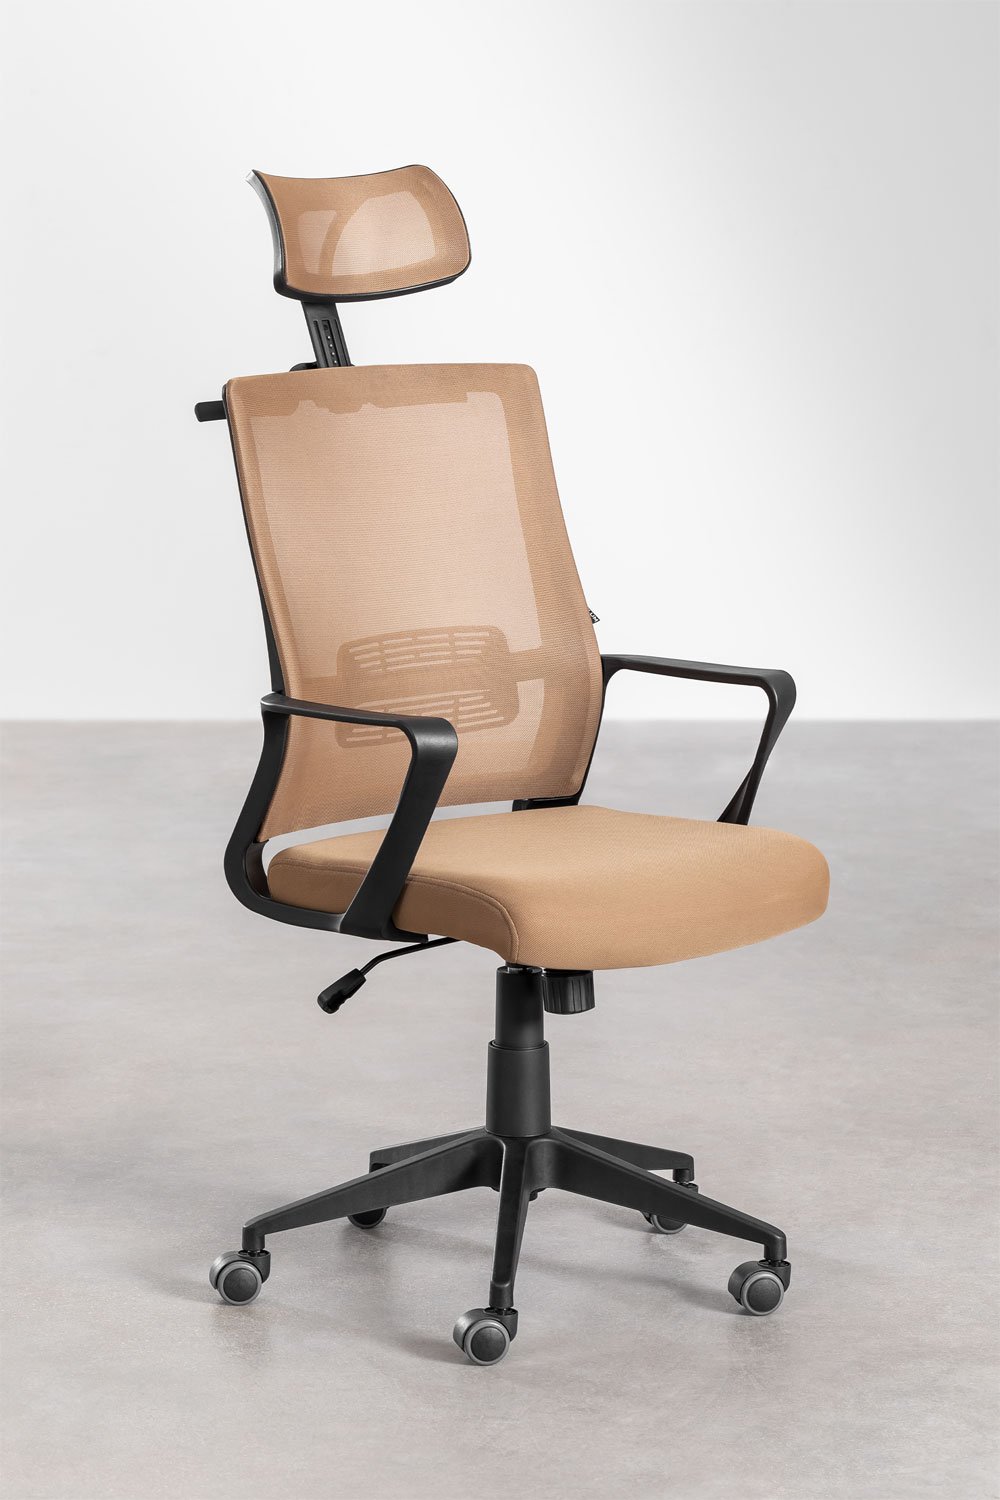 Krzesło biurowe z kółkami i zagłówkiem Teill Black, obrazek w galerii 2